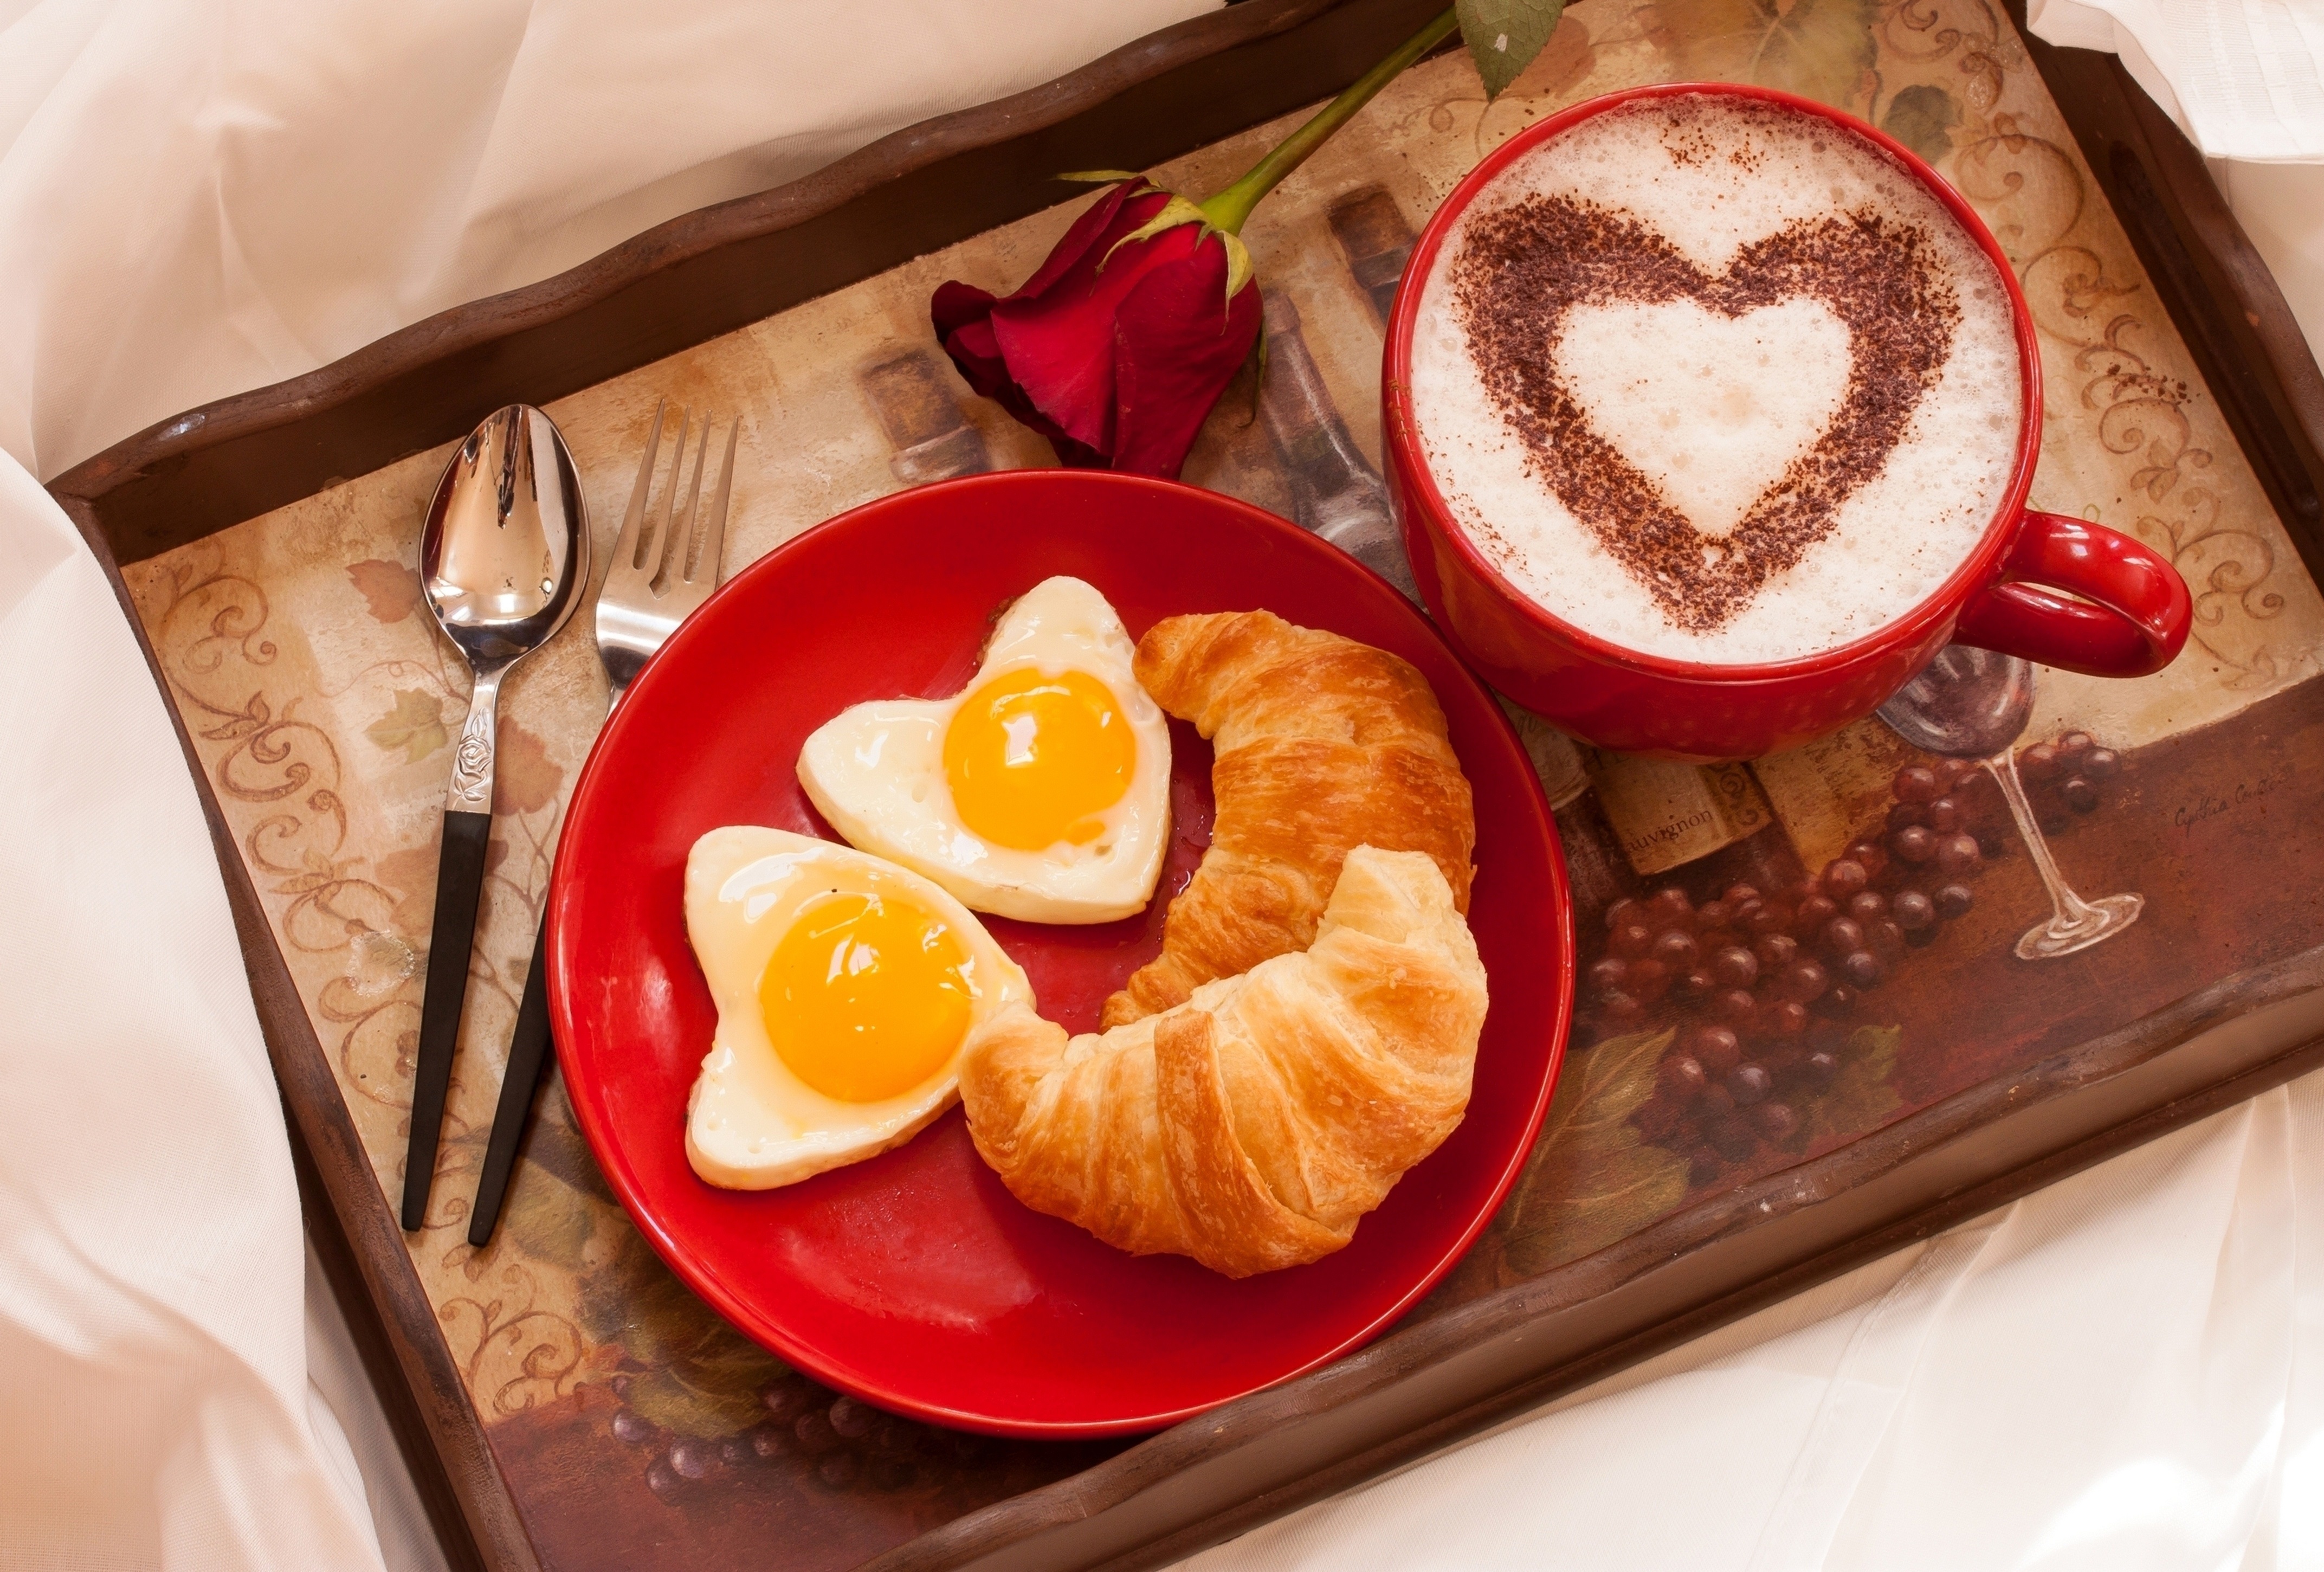 Доброе утро мужчине сердечко. Завтрак. Романтичный завтрак. Завтрак в постель парню. Красивый завтрак в постель.